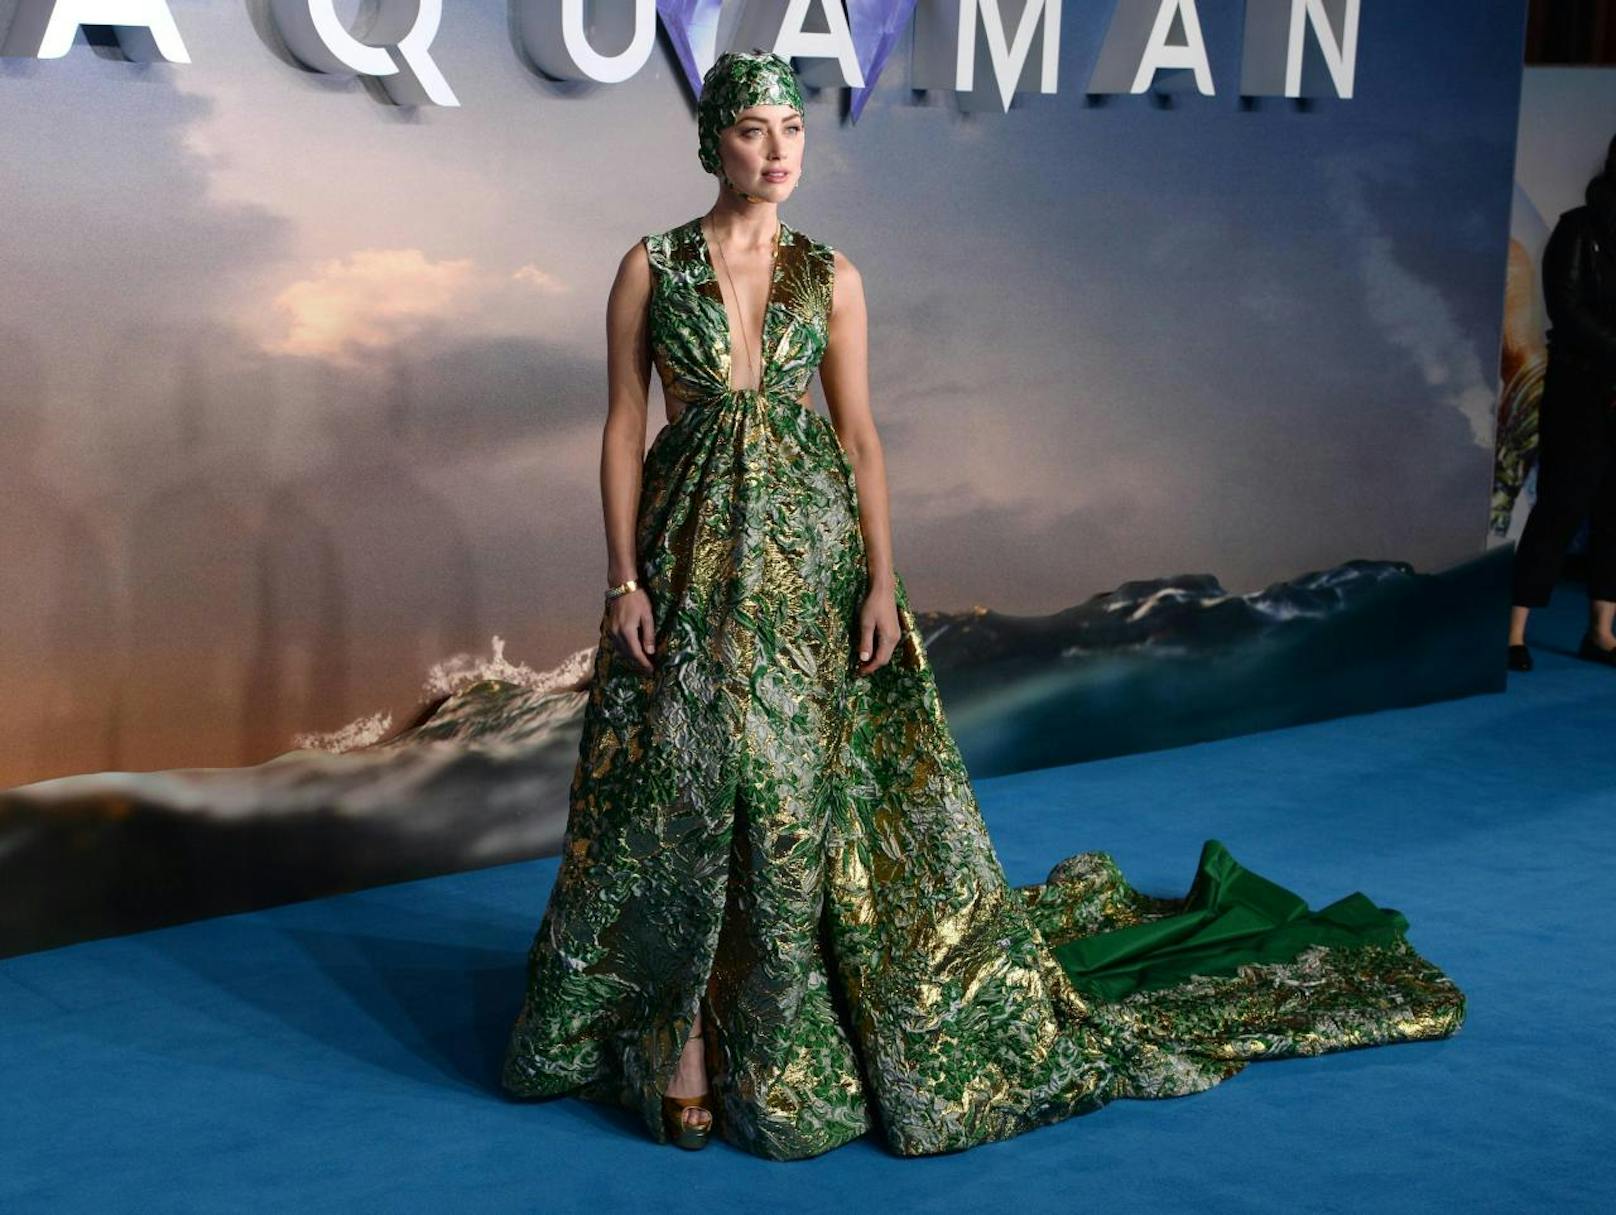 In "Aquaman" spielt sie die Rolle der Kriegerin Mera, die Aquaman auf seinen Abenteuern begleitet.